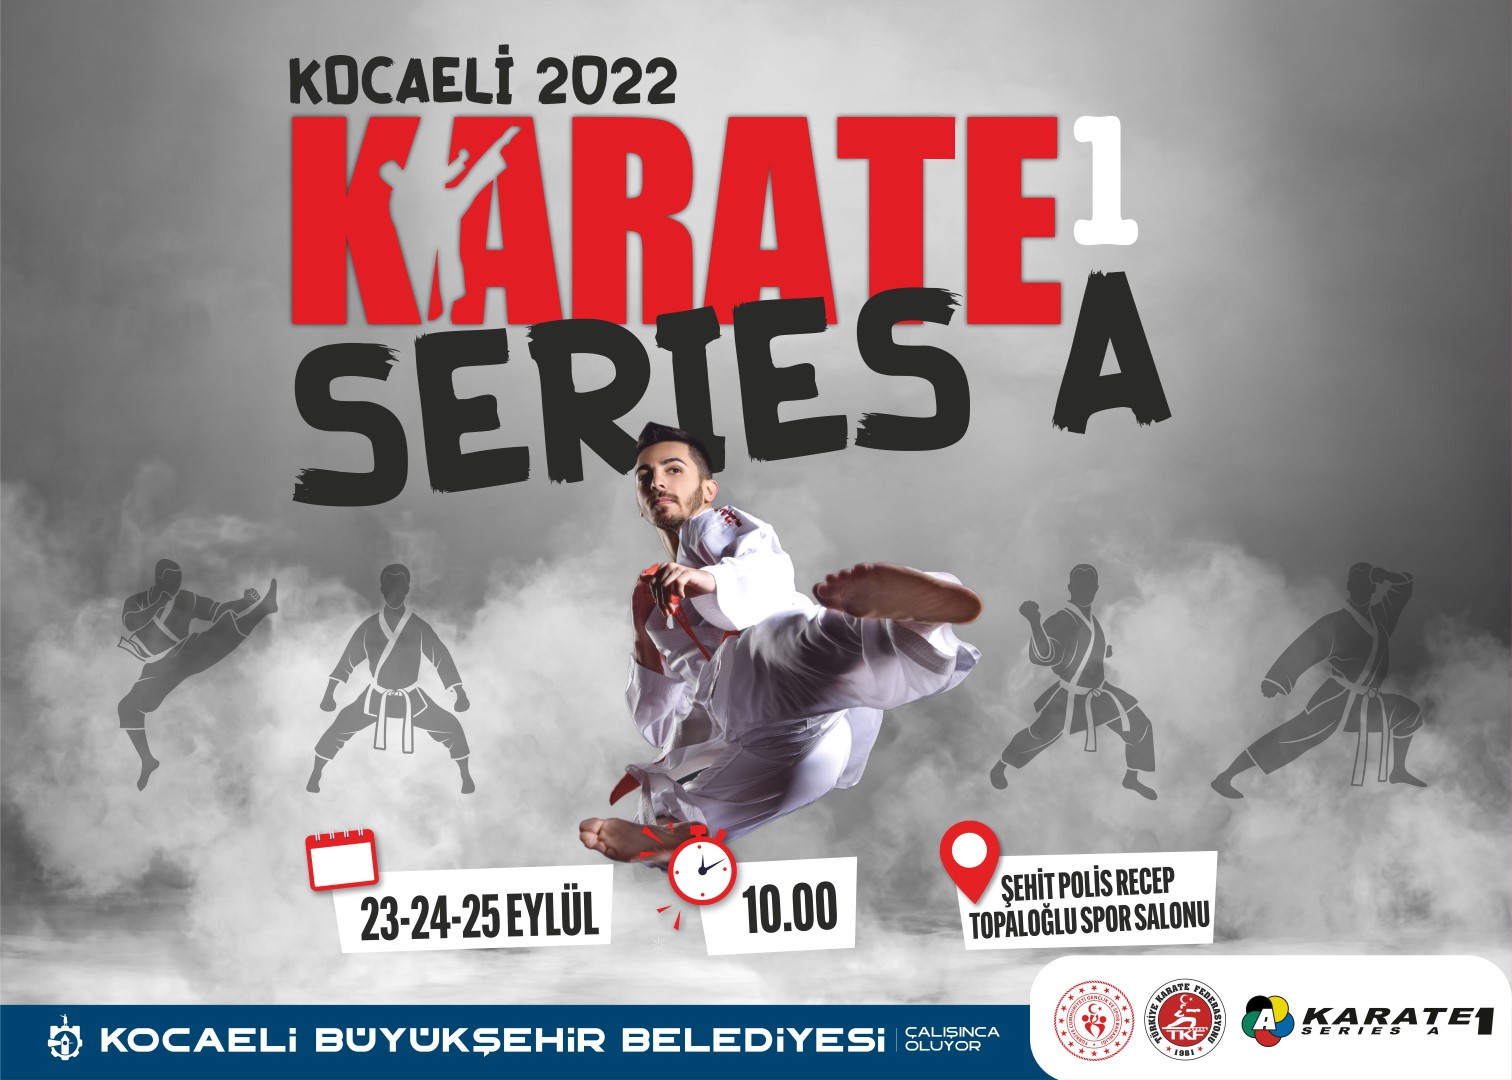 Uluslararası Karate 1 Seri A Şampiyonası Kocaeli’de başlıyor